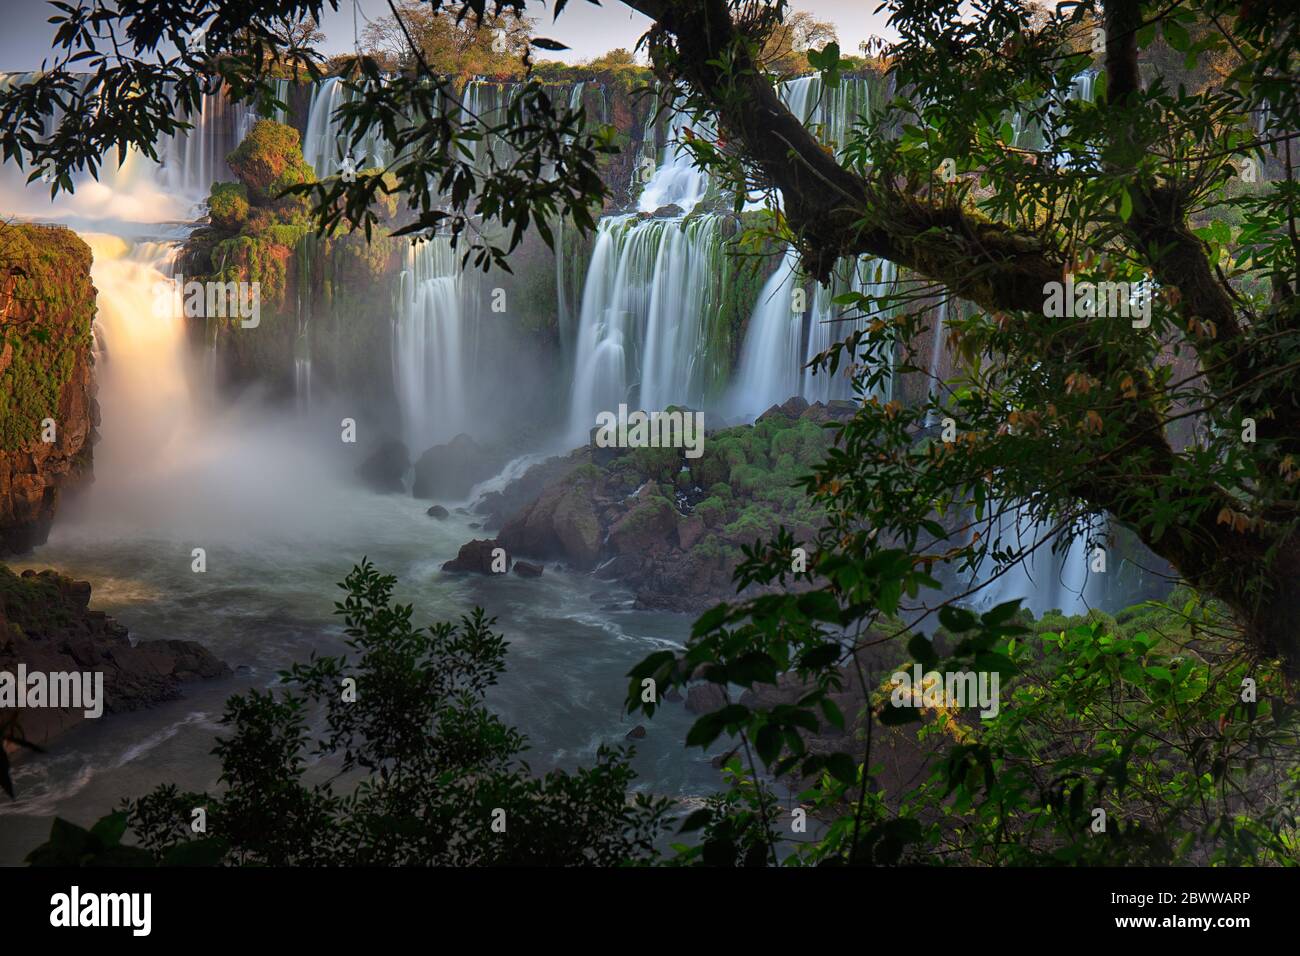 Die Iguazu Wasserfälle, Iguazu National Park, Argentinien Stockfoto